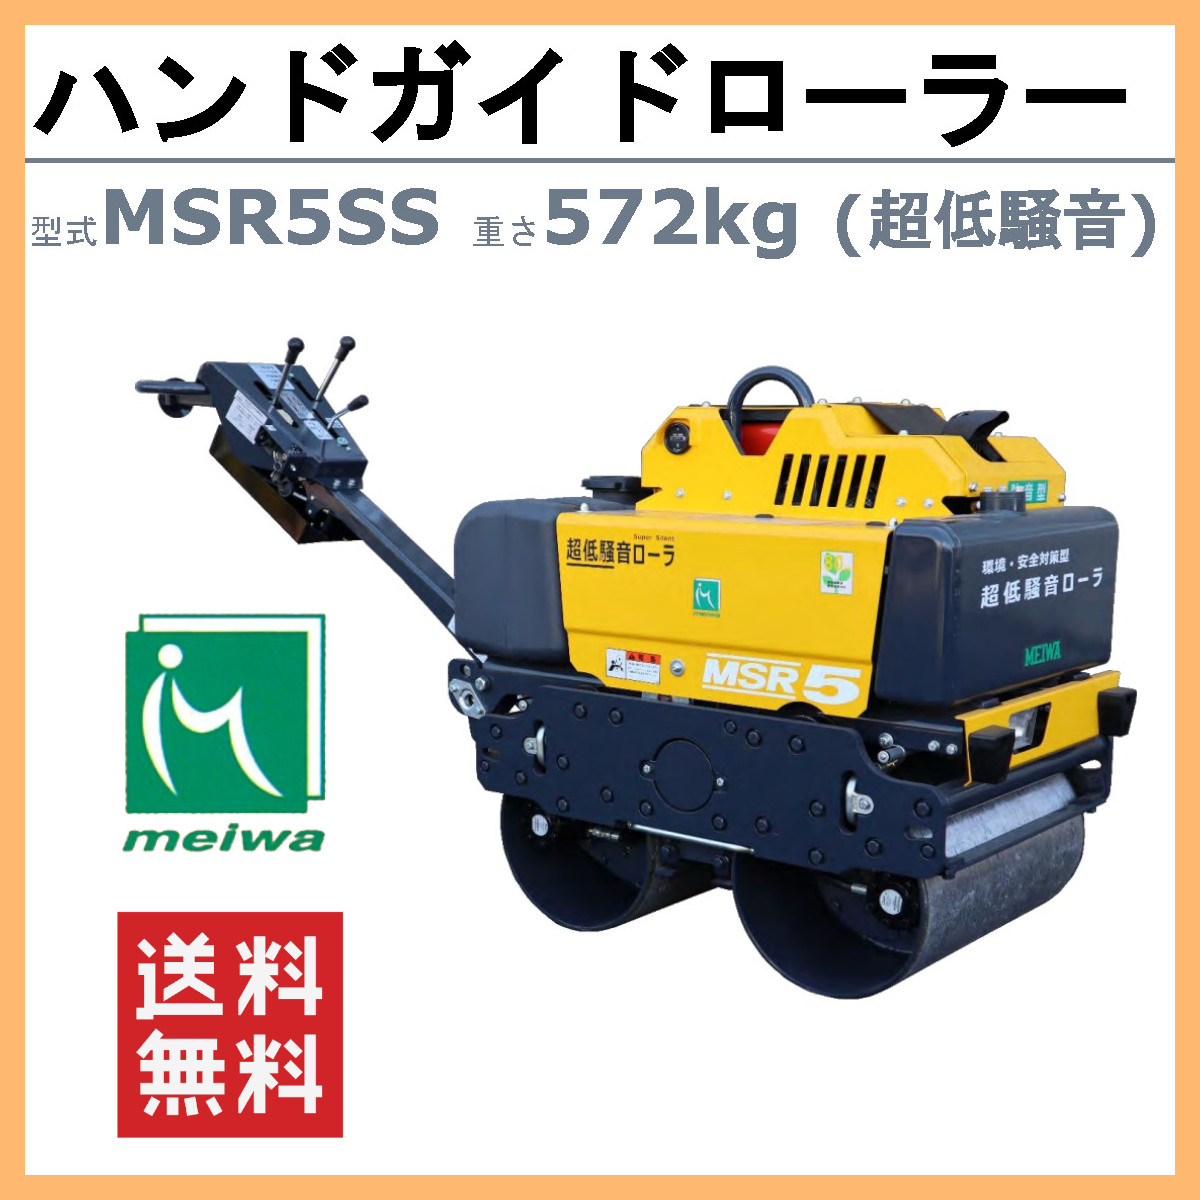 明和製作所 ハンドローラー MSR5SS 超低騒音 転圧機 ハンドガイドローラー 1tローラー ローラ 明和 MEIWA